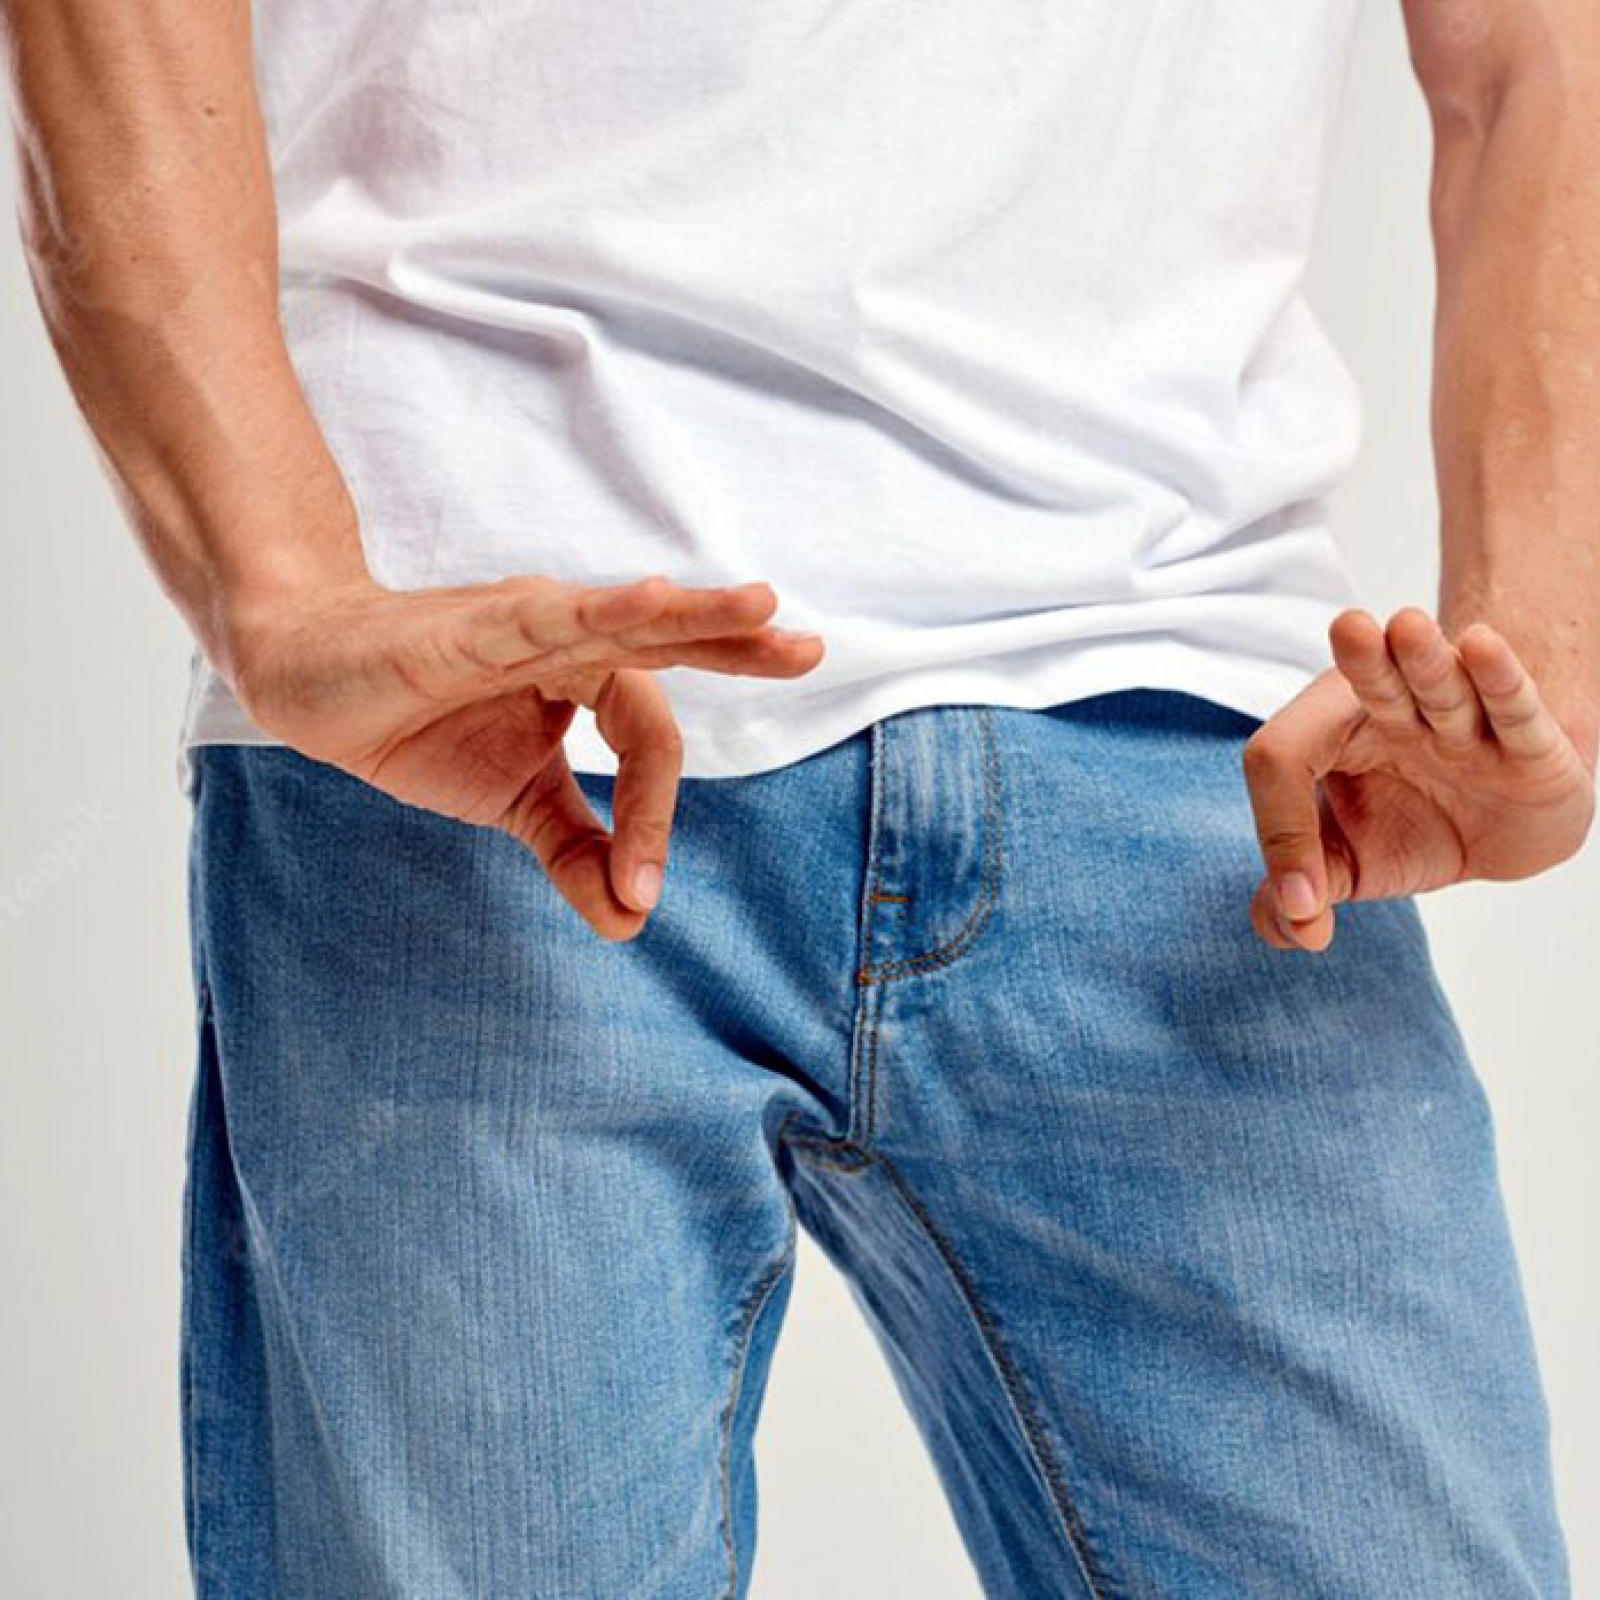 Варикоз в паху у мужчин | Причины диагностика лечение | АнгиоЛайф Киев Запорожье